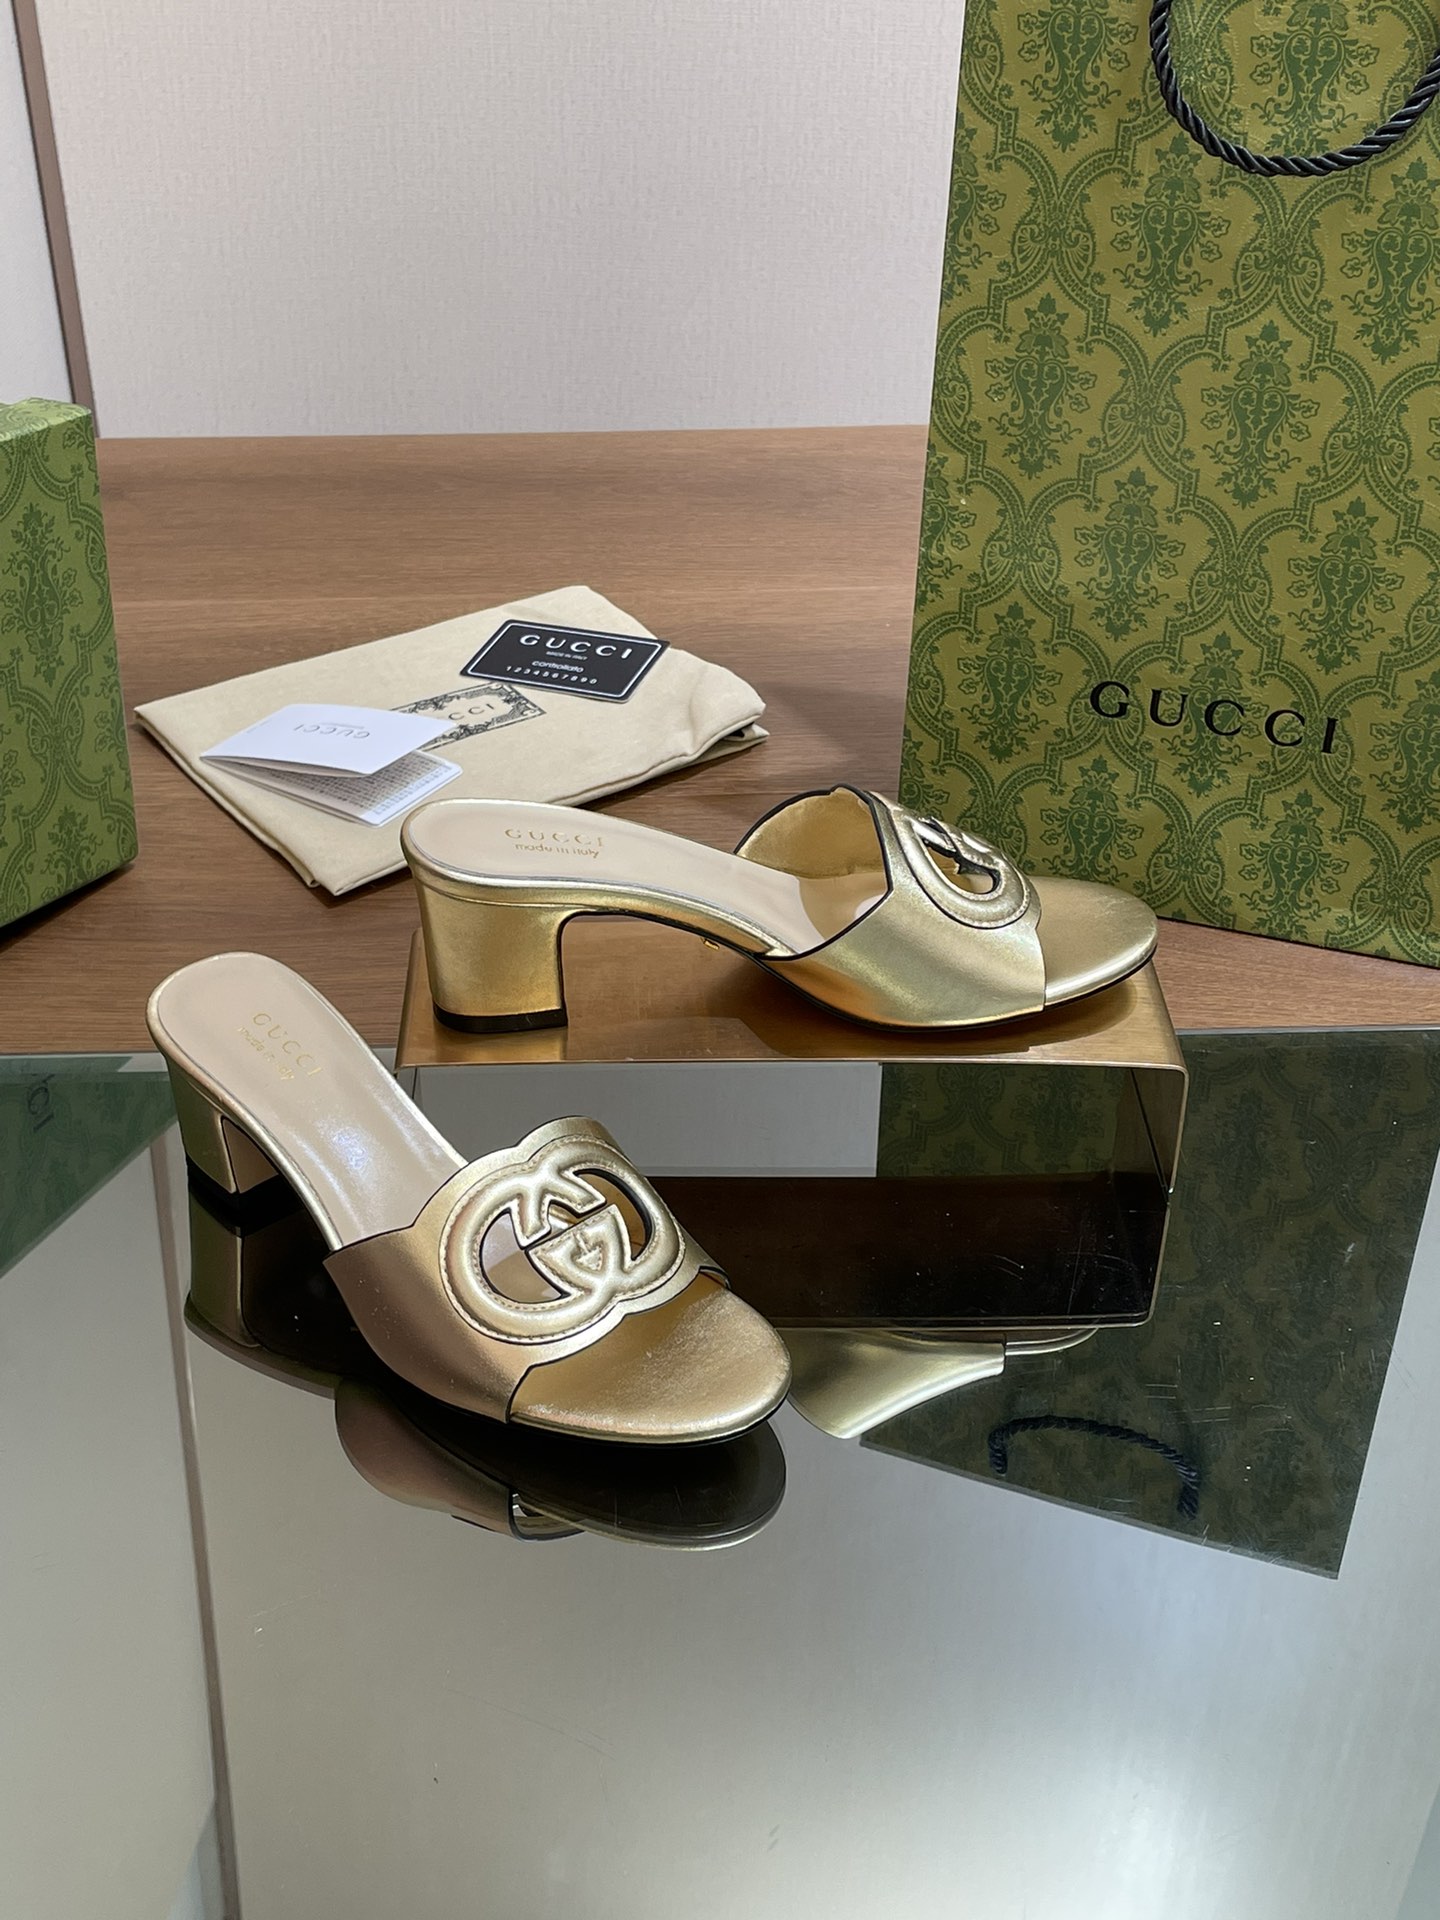 Faux de meilleure qualité
 Gucci Chaussures Pantoufles Travail ouvert Genuine Leather Peau mouton Série d’été